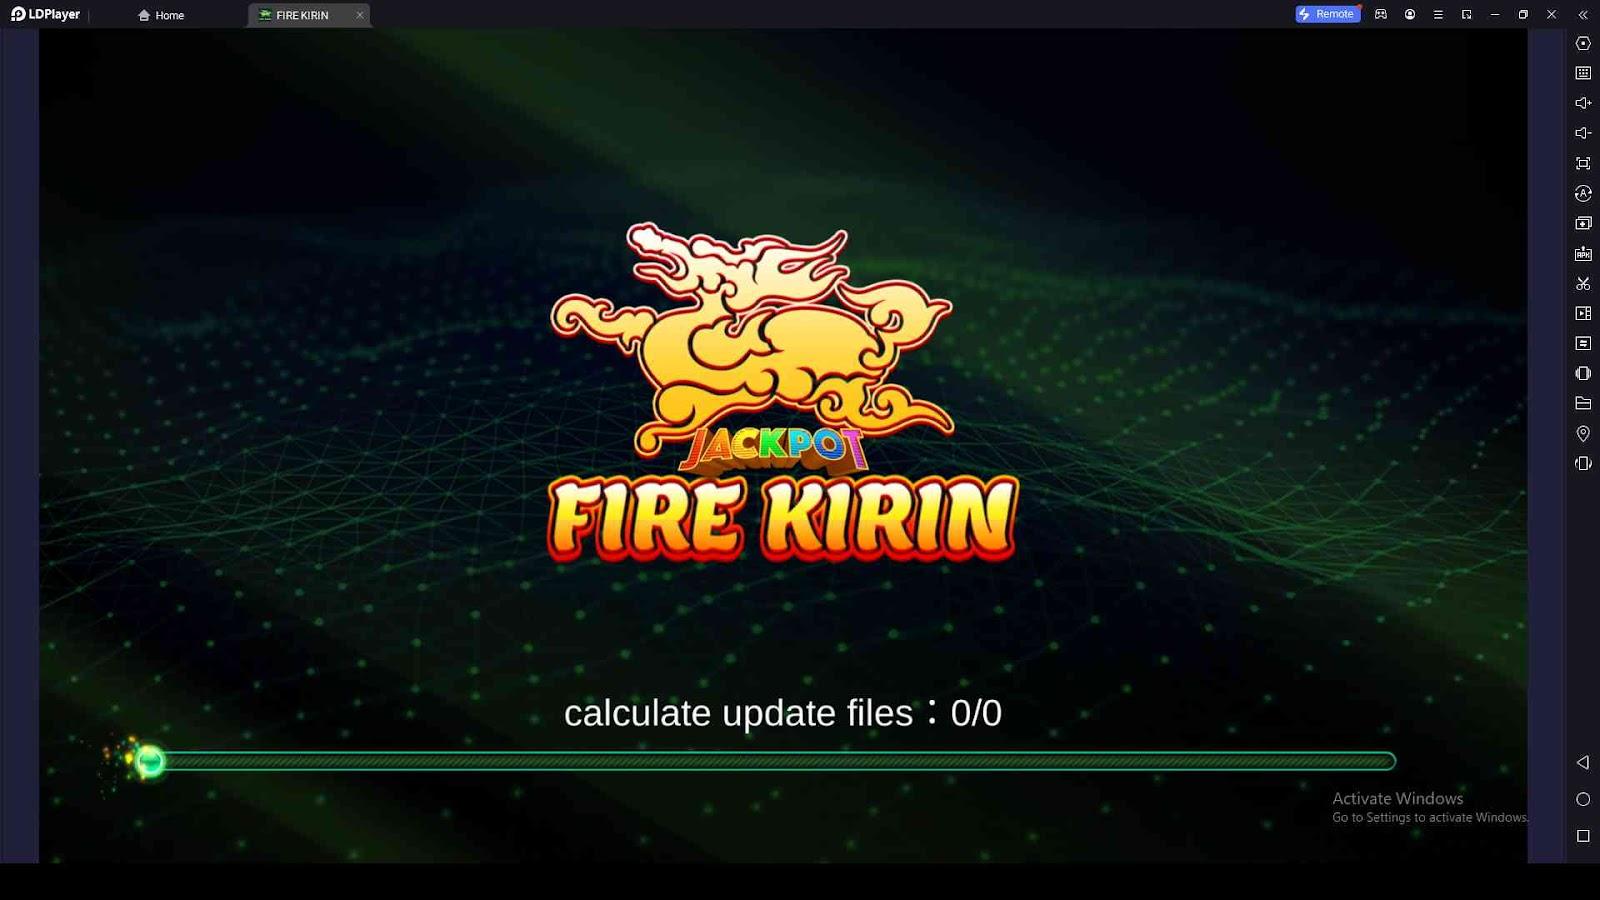 Fire Kirin